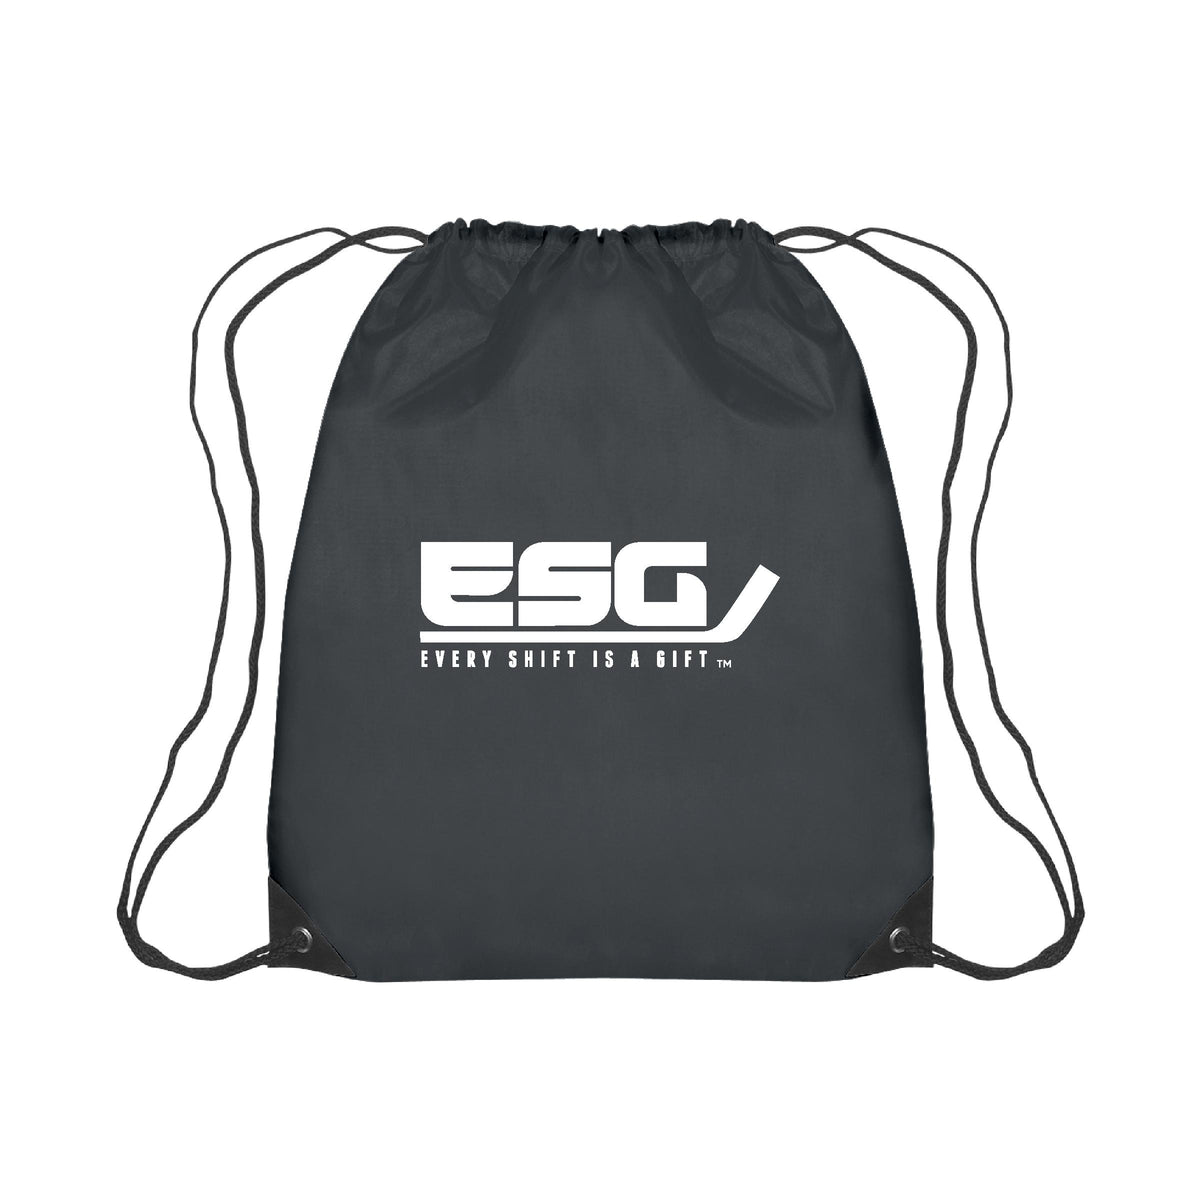 ESG Drawstring Bag - ESG - Every Shift Is a Gift